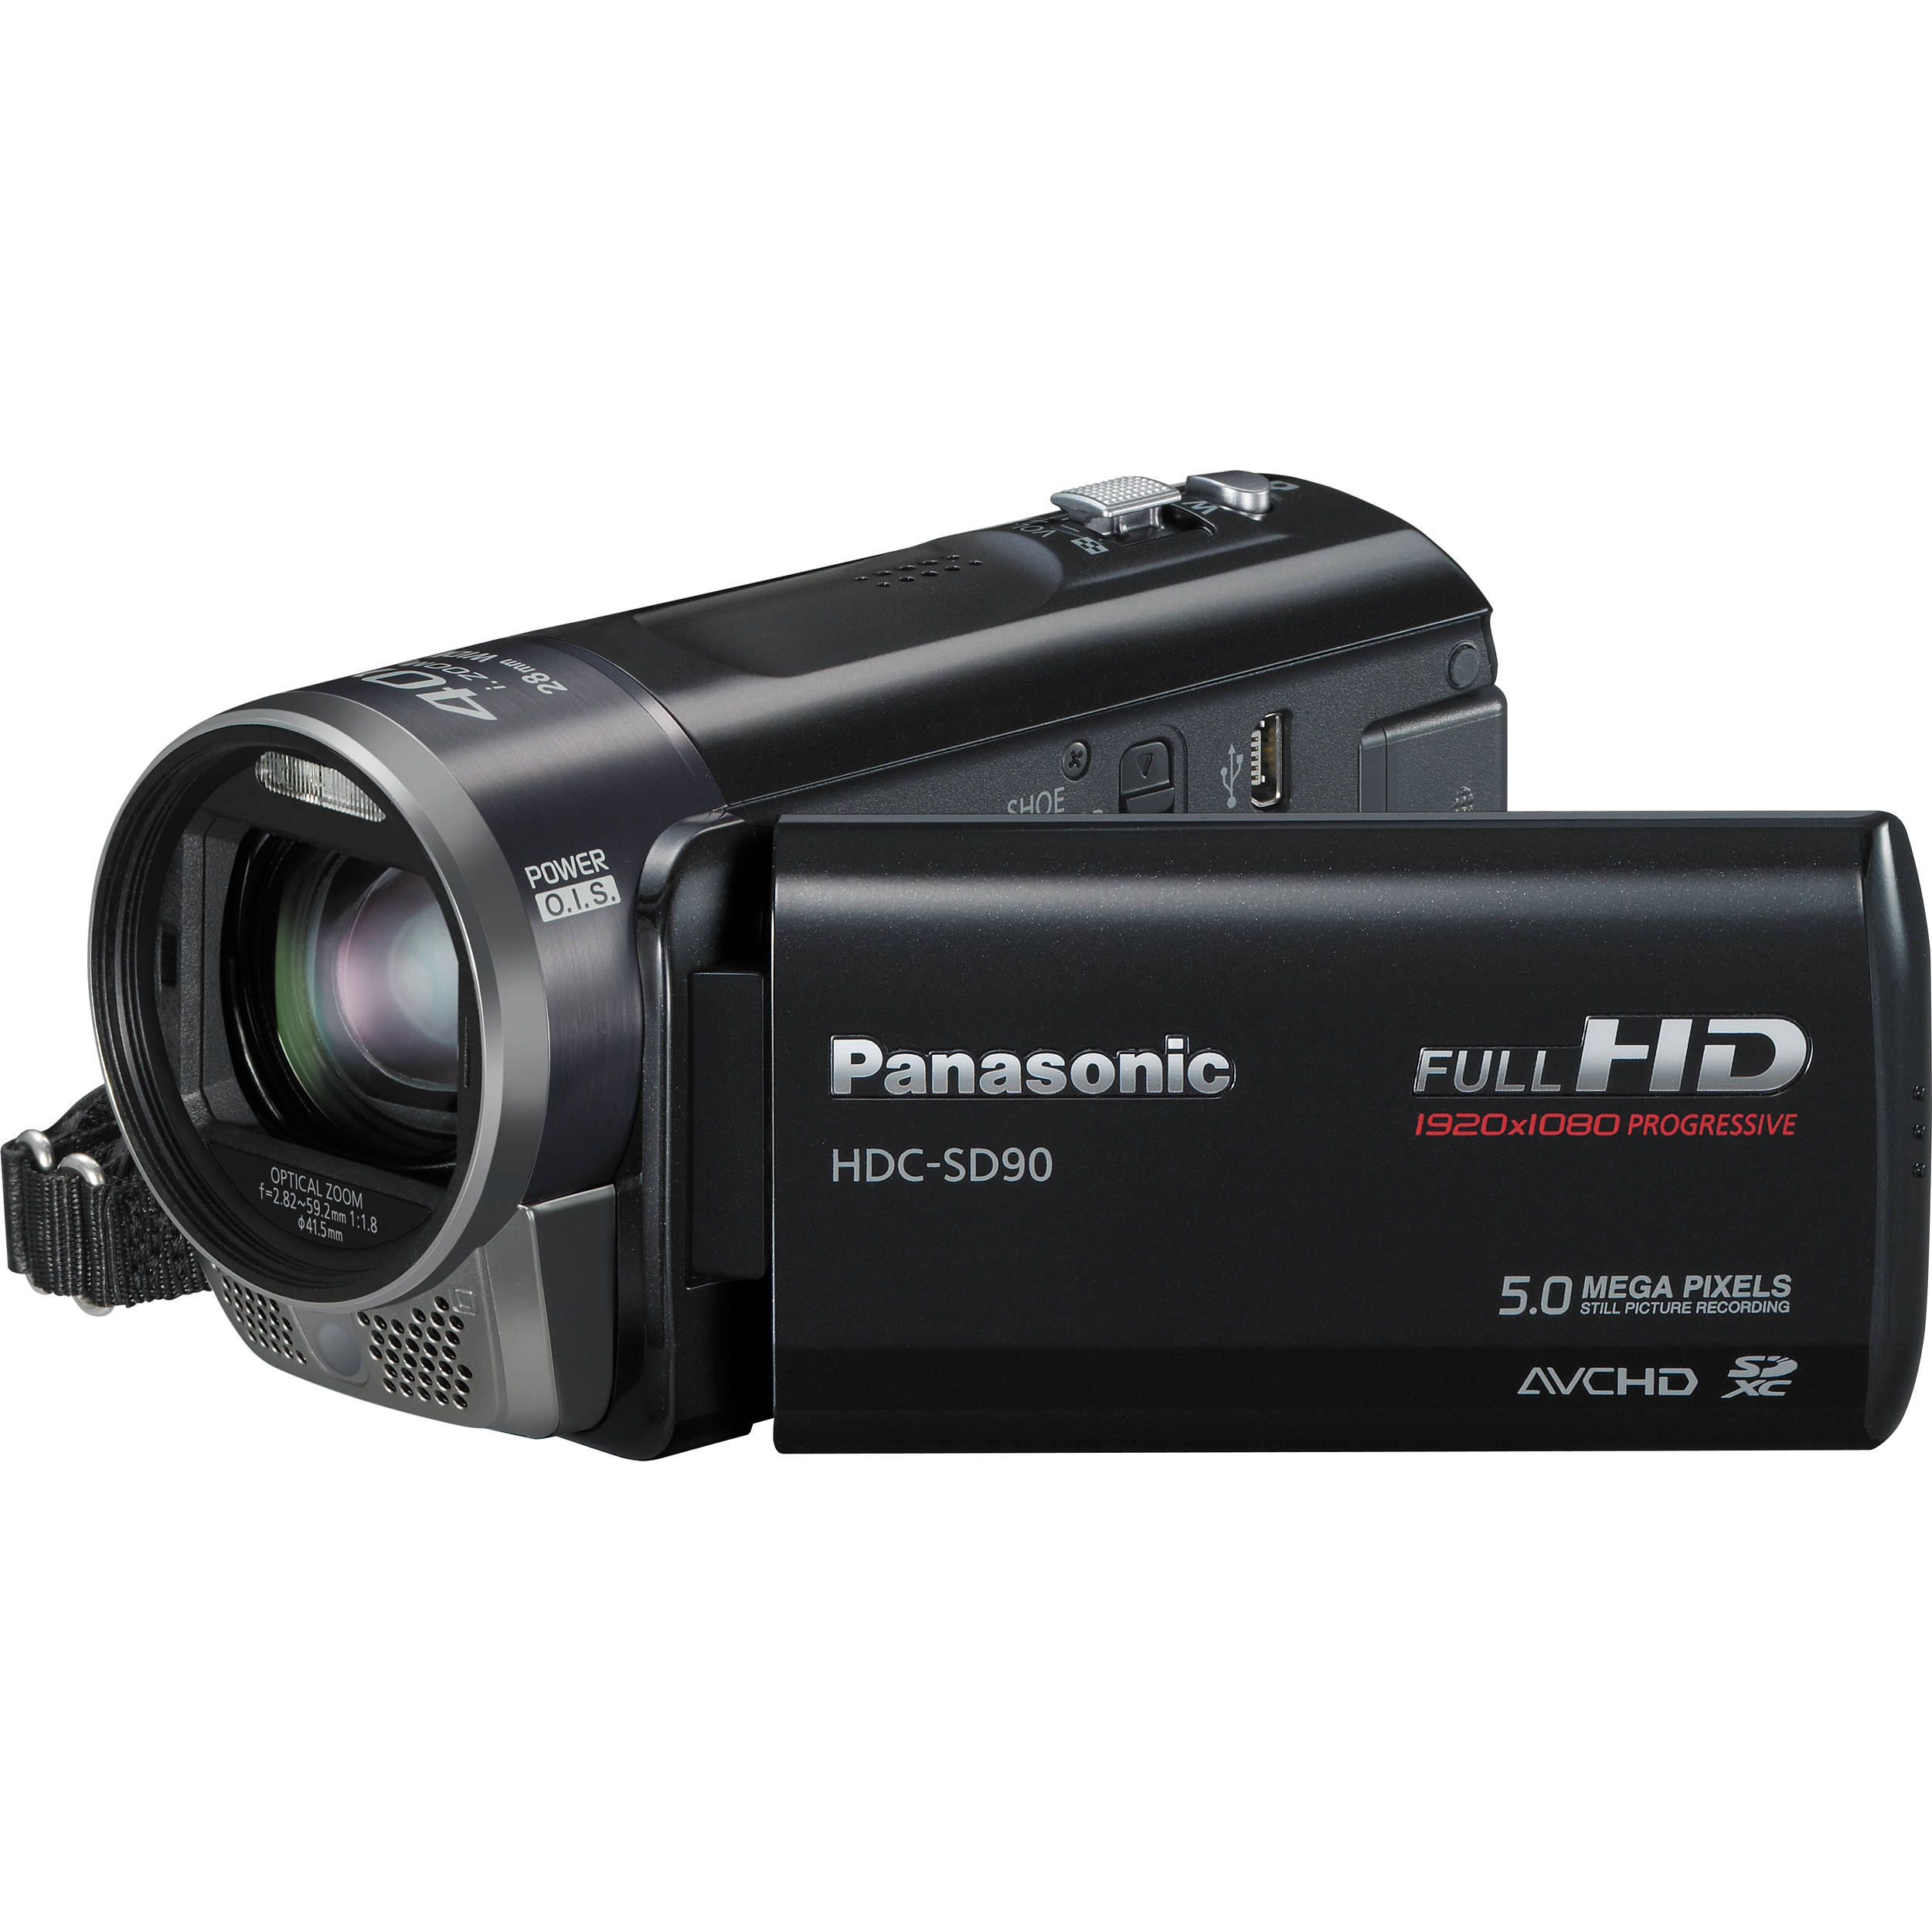 HDC-SD90EC Videocámara Panasonic Accesorios y repuestos